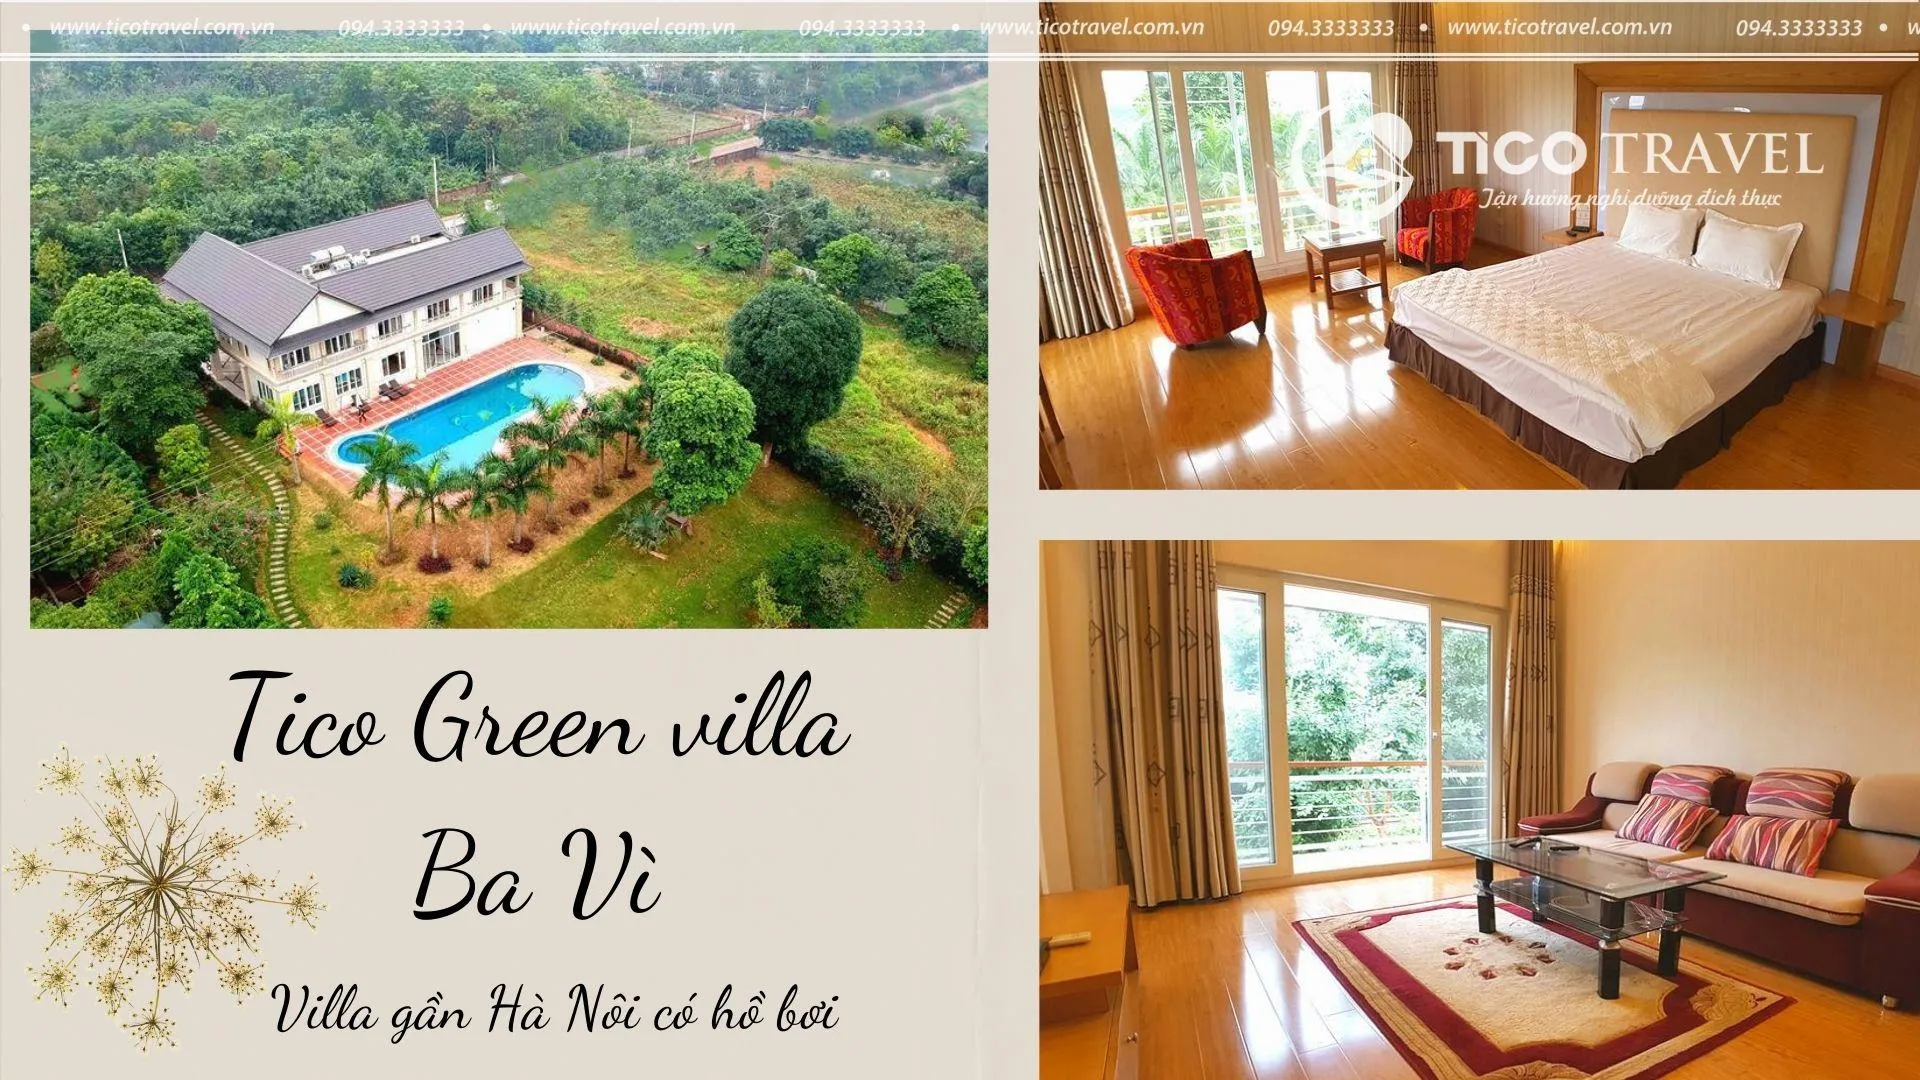 Green villa Ba Vì - Villa quanh Hà Nội giá rẻ có hồ bơi